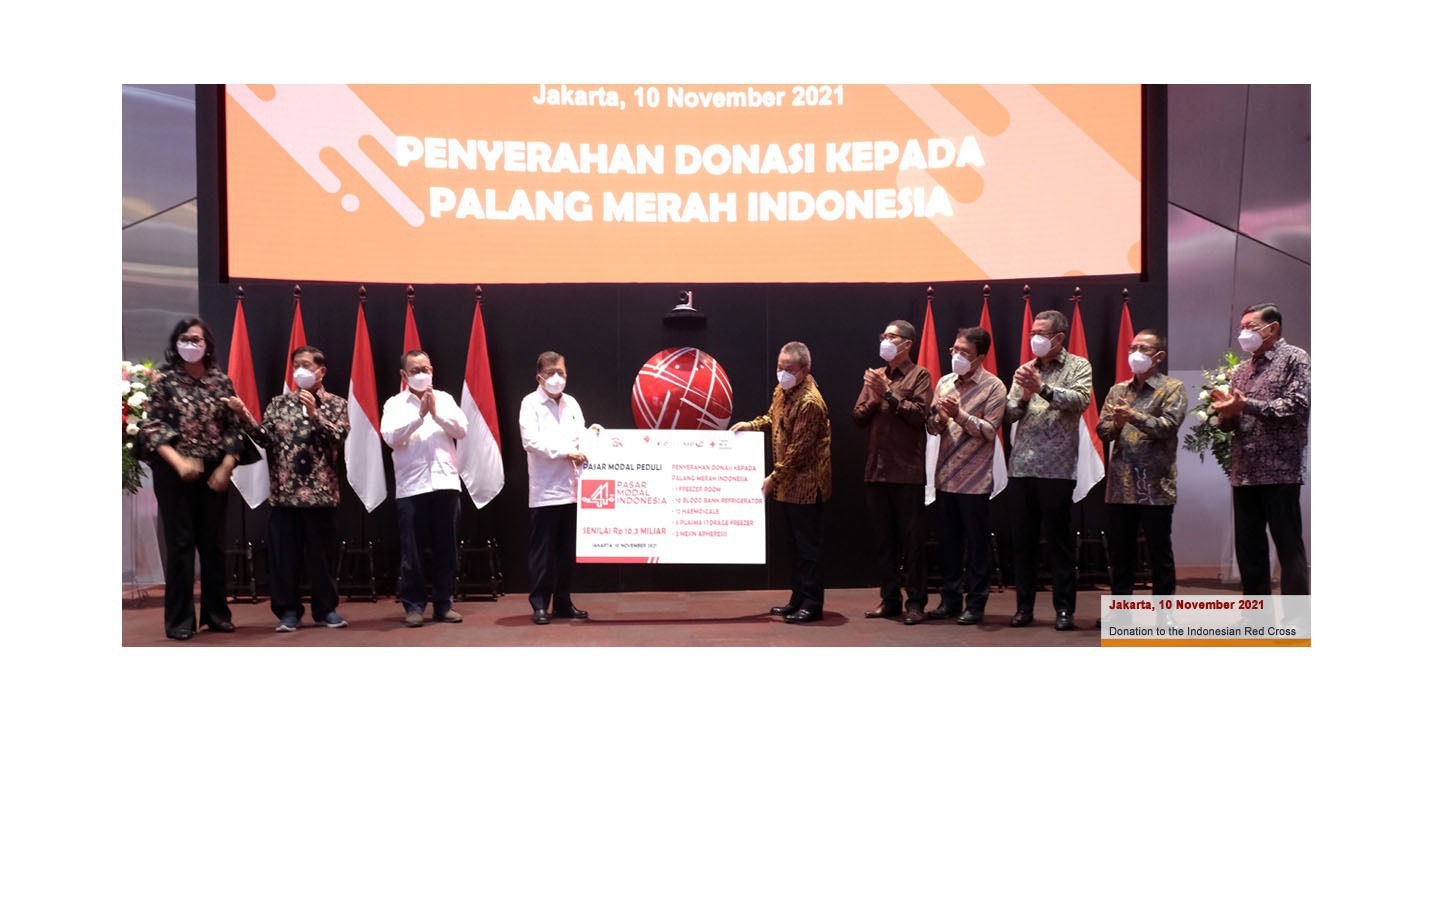 Penyerahan donasi ke Palang Merah Indonesia